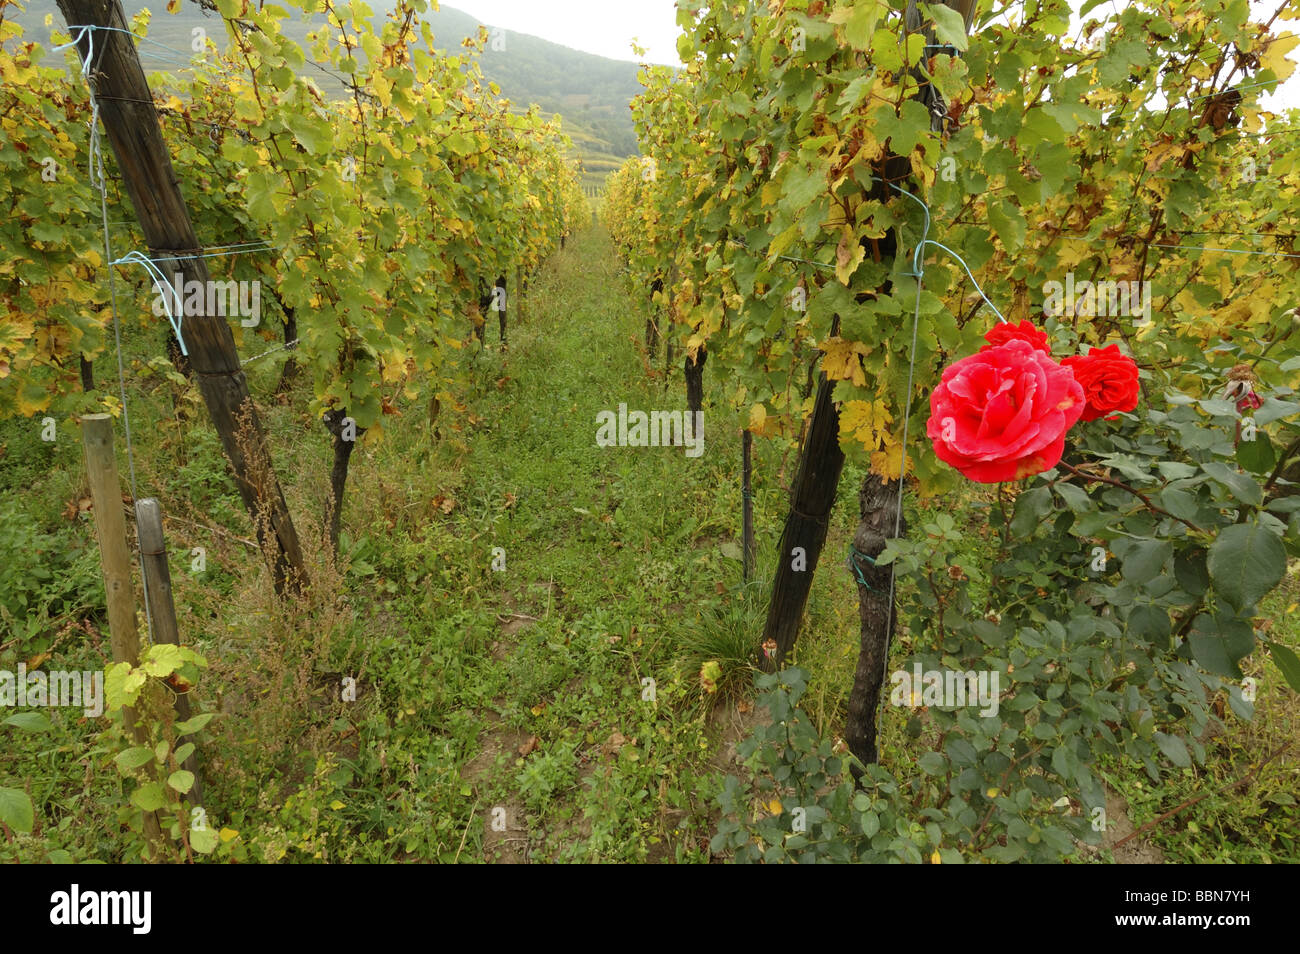 Ein Weinberg rose Busch dienen als Früherkennung von Krankheiten  Stockfotografie - Alamy